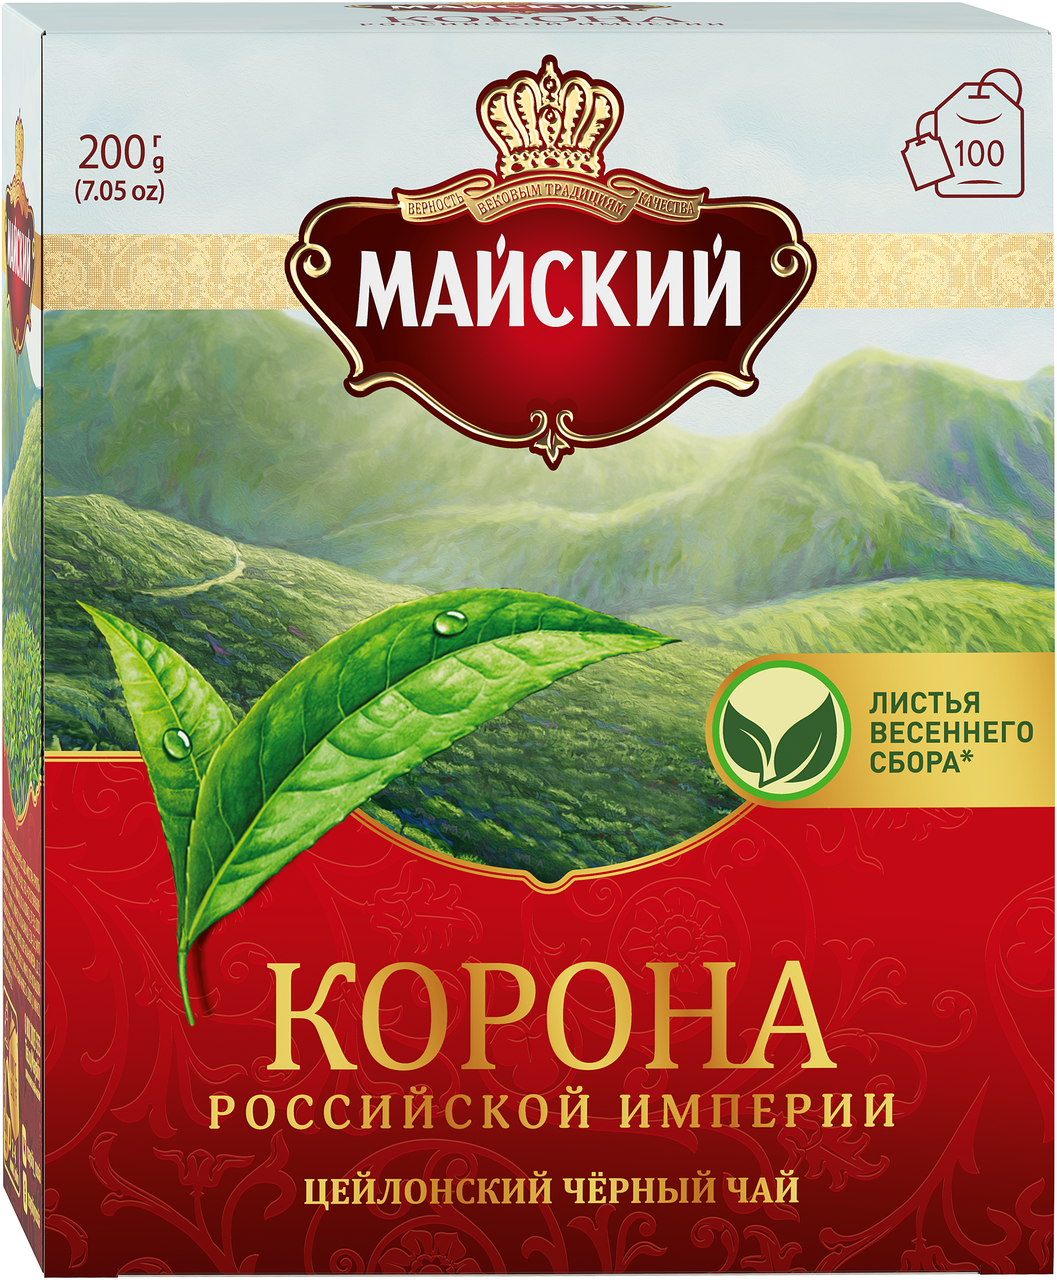 Чай Майский КОРОНА РОССИЙСКОЙ ИМПЕРИИ черный, 100х2г